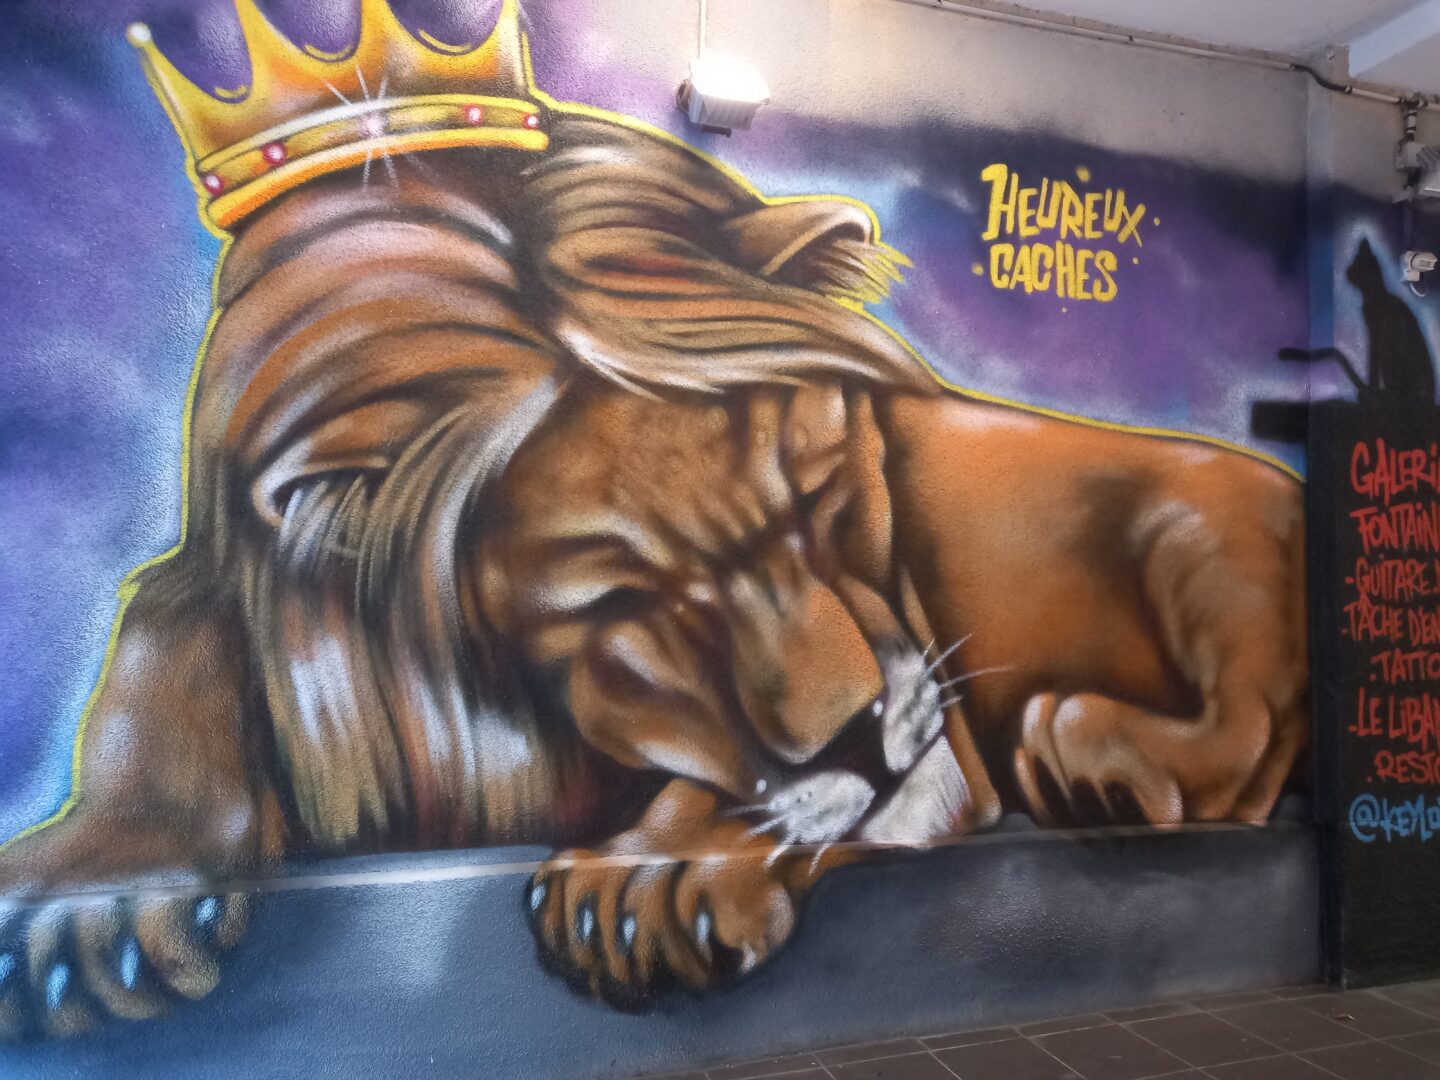 [Justine CM] Rue piétionne. Photo prise en novembre 2021. Lion qui dort, avec une couronne sur la tête. Il est écrit "heureux cachés'.